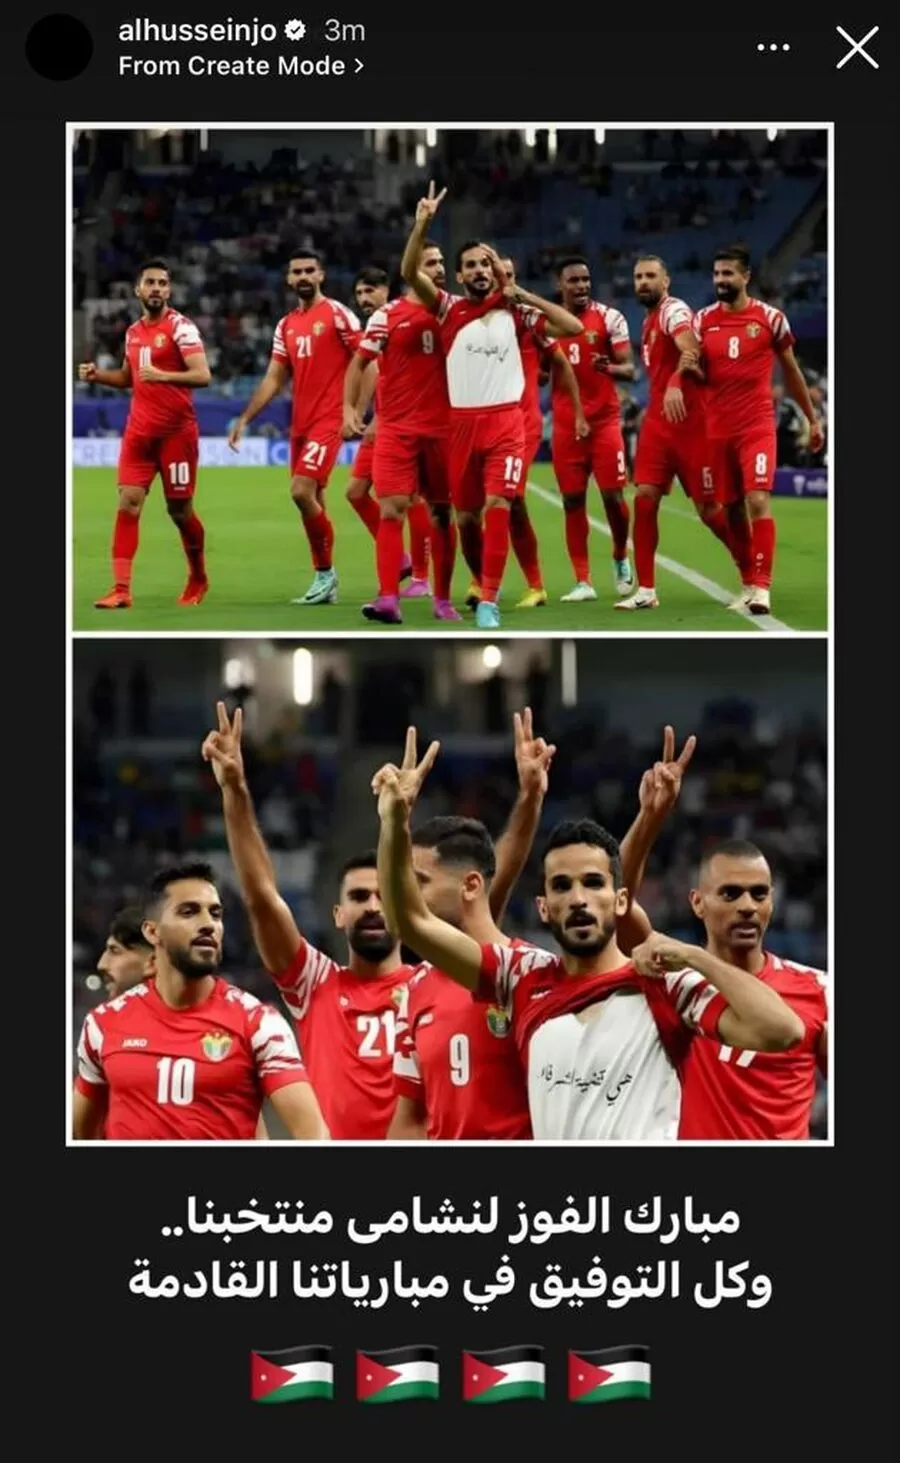 مدار الساعة,ولي العهد,الحسين بن عبدالله الثاني,كأس آسيا,المنتخب الوطني,منتخب النشامى